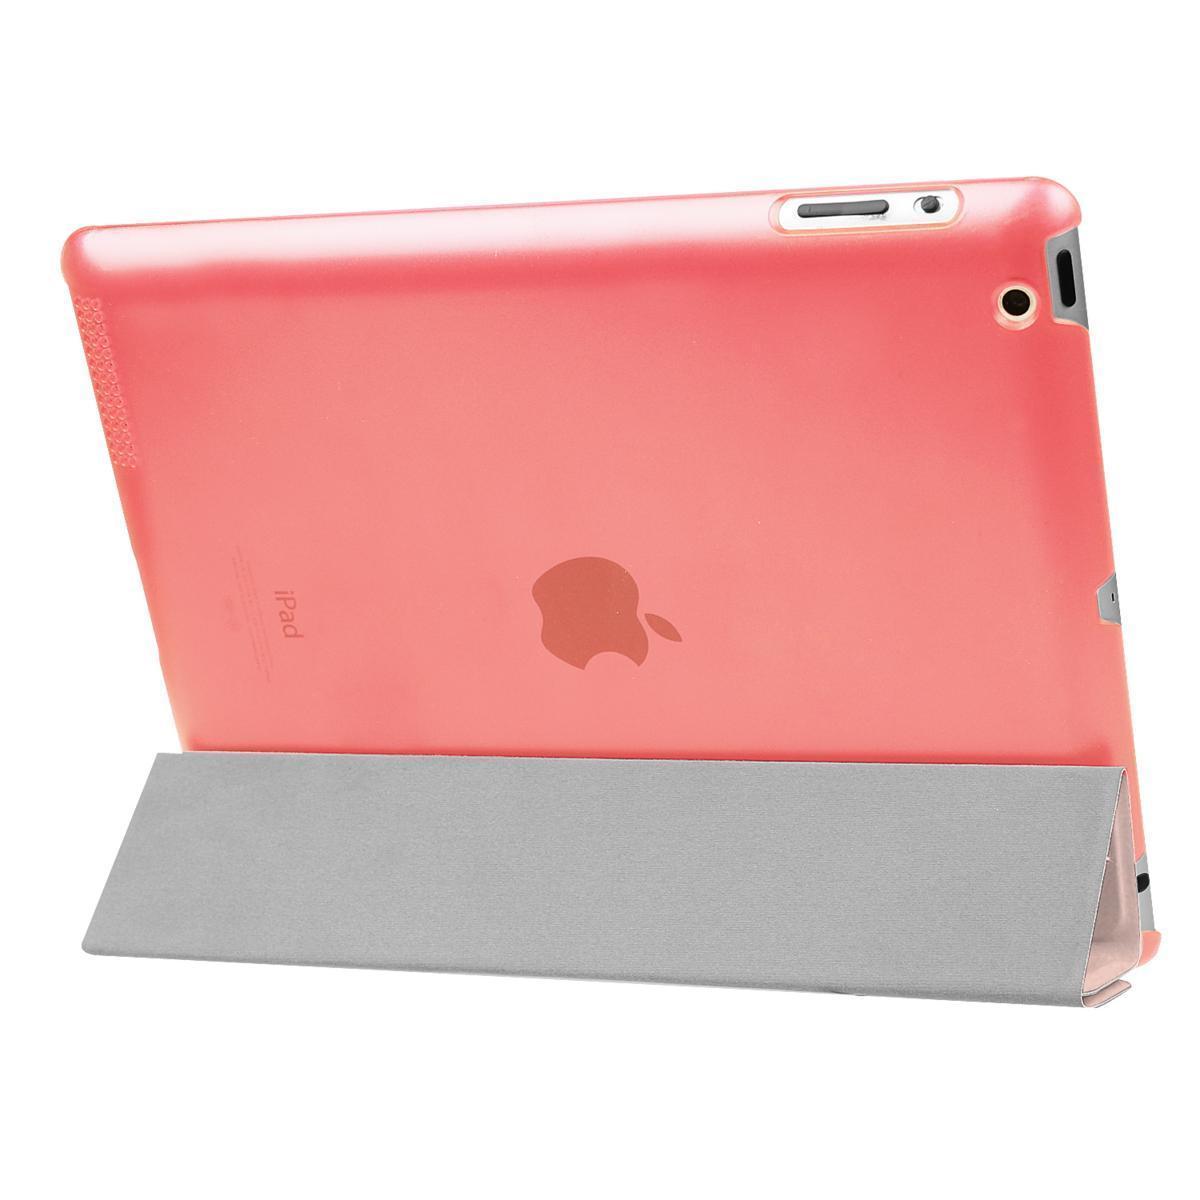 iPad ケース iPad 2/3/4世代（9.7inch) 兼用 三つ折スマートカバー PUレザー アイパッド ケース スタンド機能 ローズゴールド_画像2